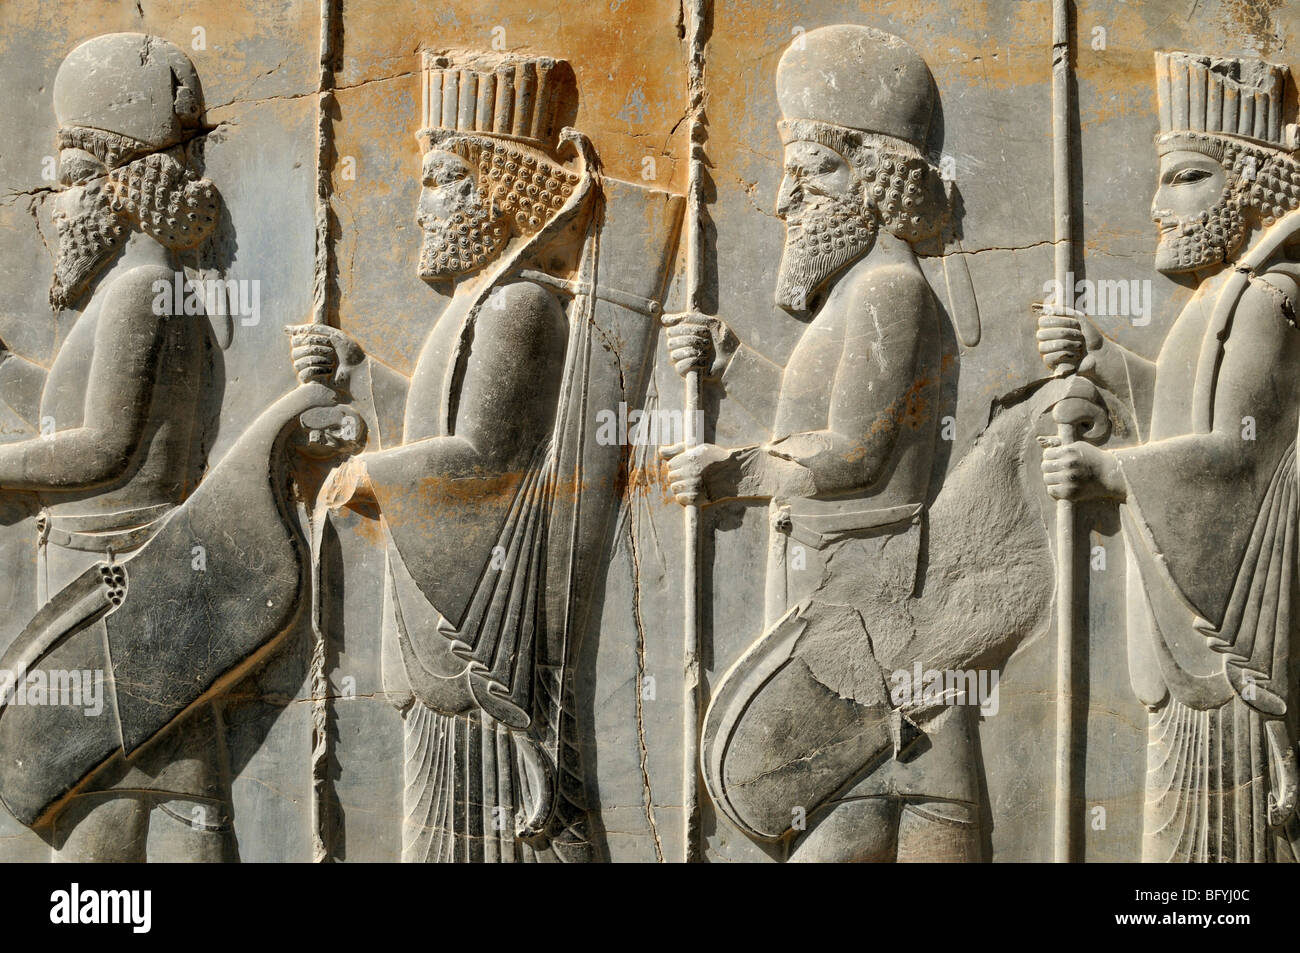 Bas-relief de persan et soldats médian au site archéologique de Persépolis achéménide, UNESCO World Heritage Site, Pers Banque D'Images